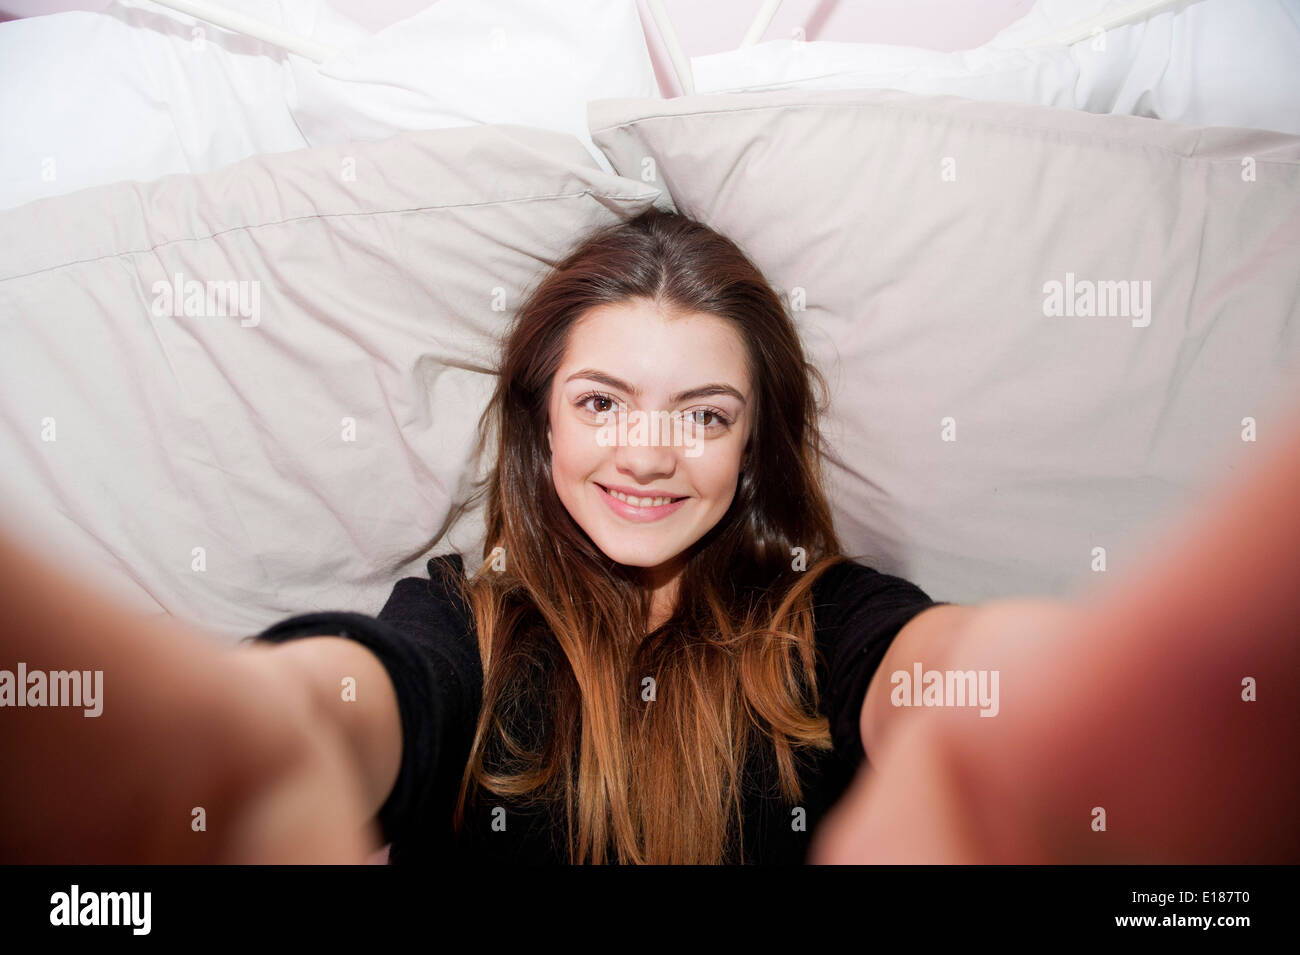 13 Jahre alten Mädchens posieren für ein vorgeben Selfie in ihrem Schlafzimmer Stockfoto